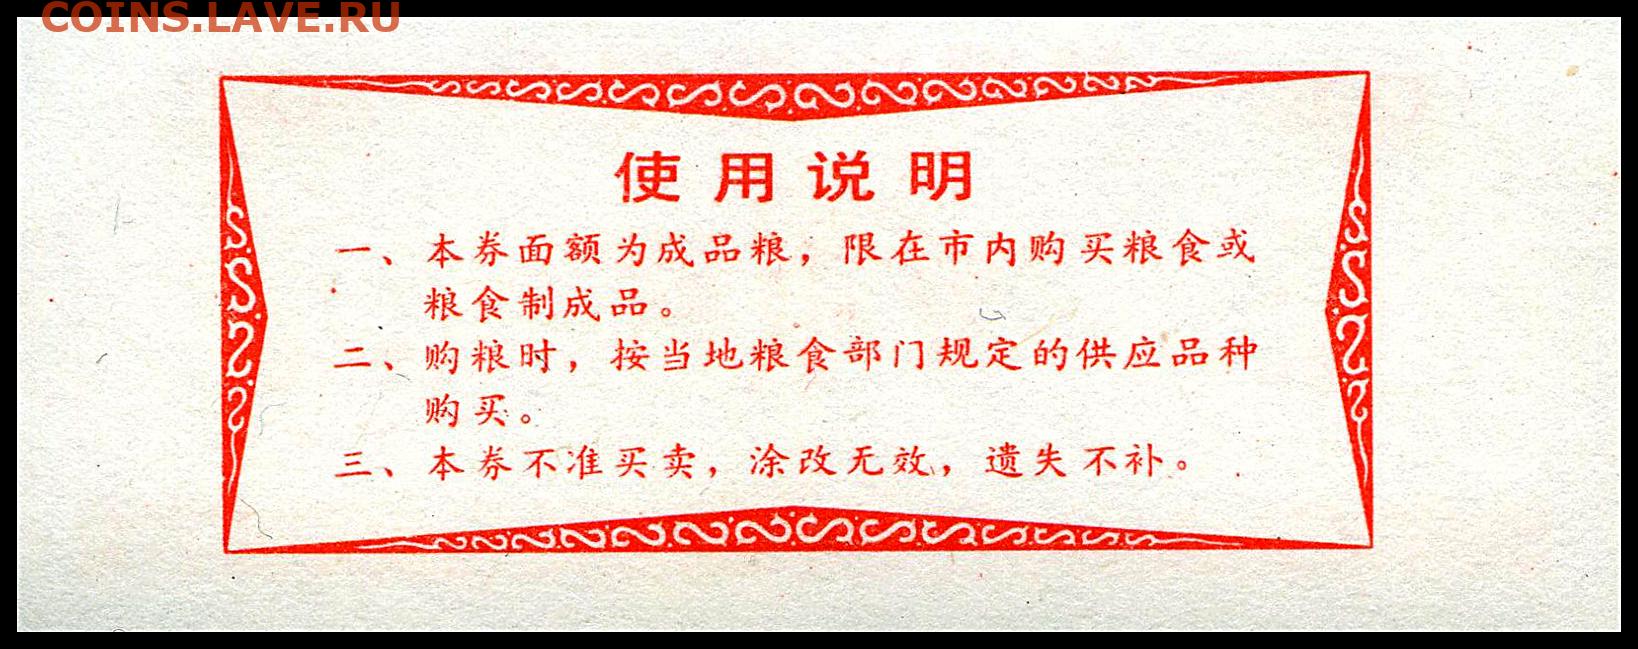 Переведи на китайский 1 10 11. Китайский денежный знак красный. Рисовые деньги. 1983 По китайскому. Банкнота китайца ада.